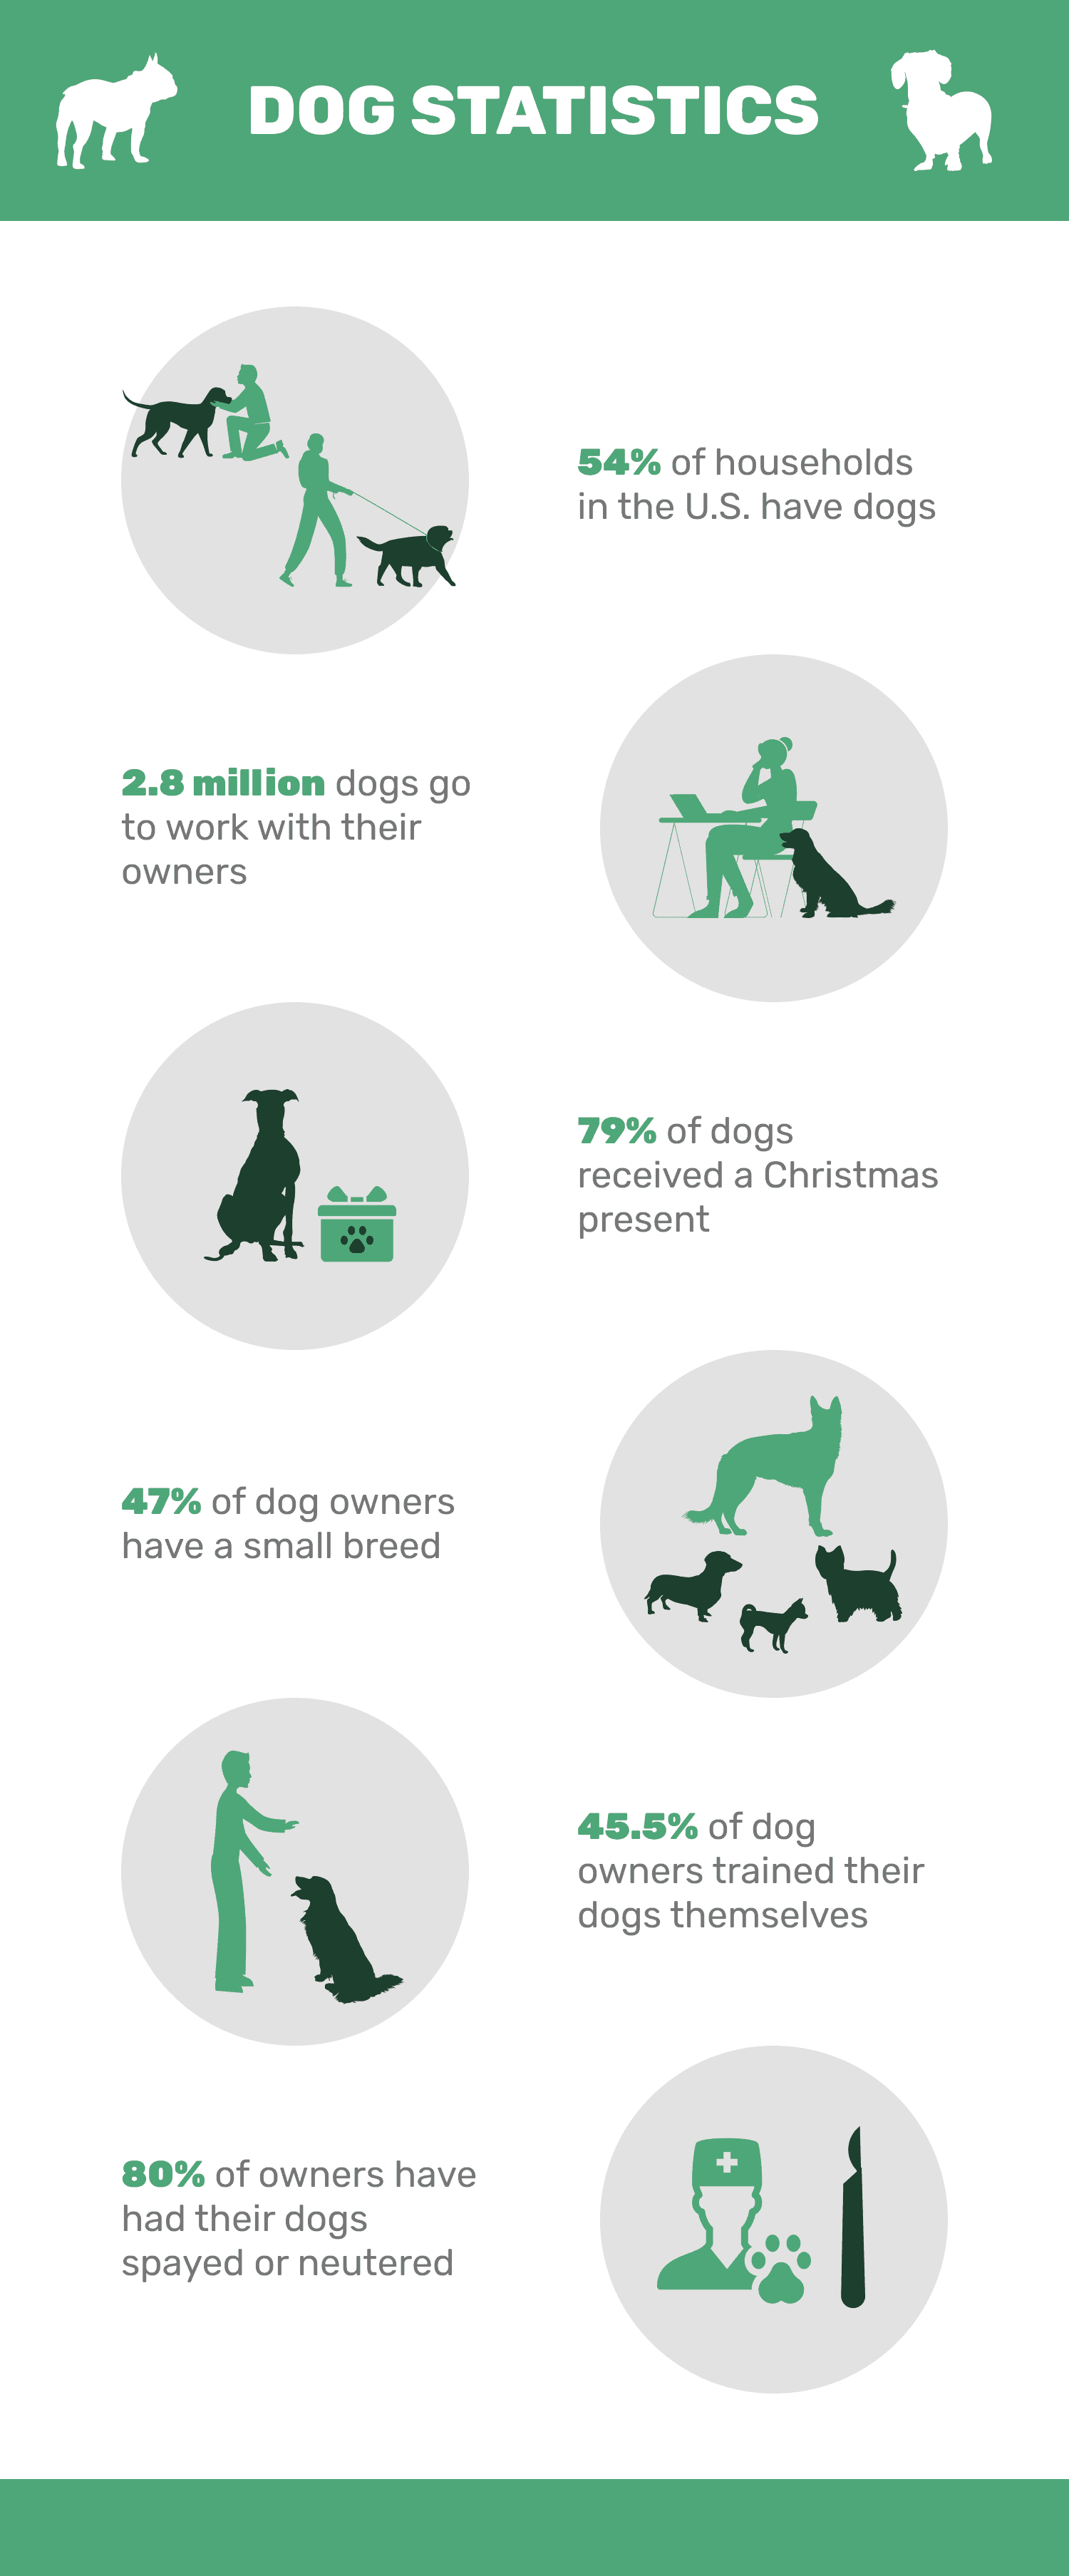 20 статистических данных о собаках, которые должны знать все любители домашних животных в 2022 году